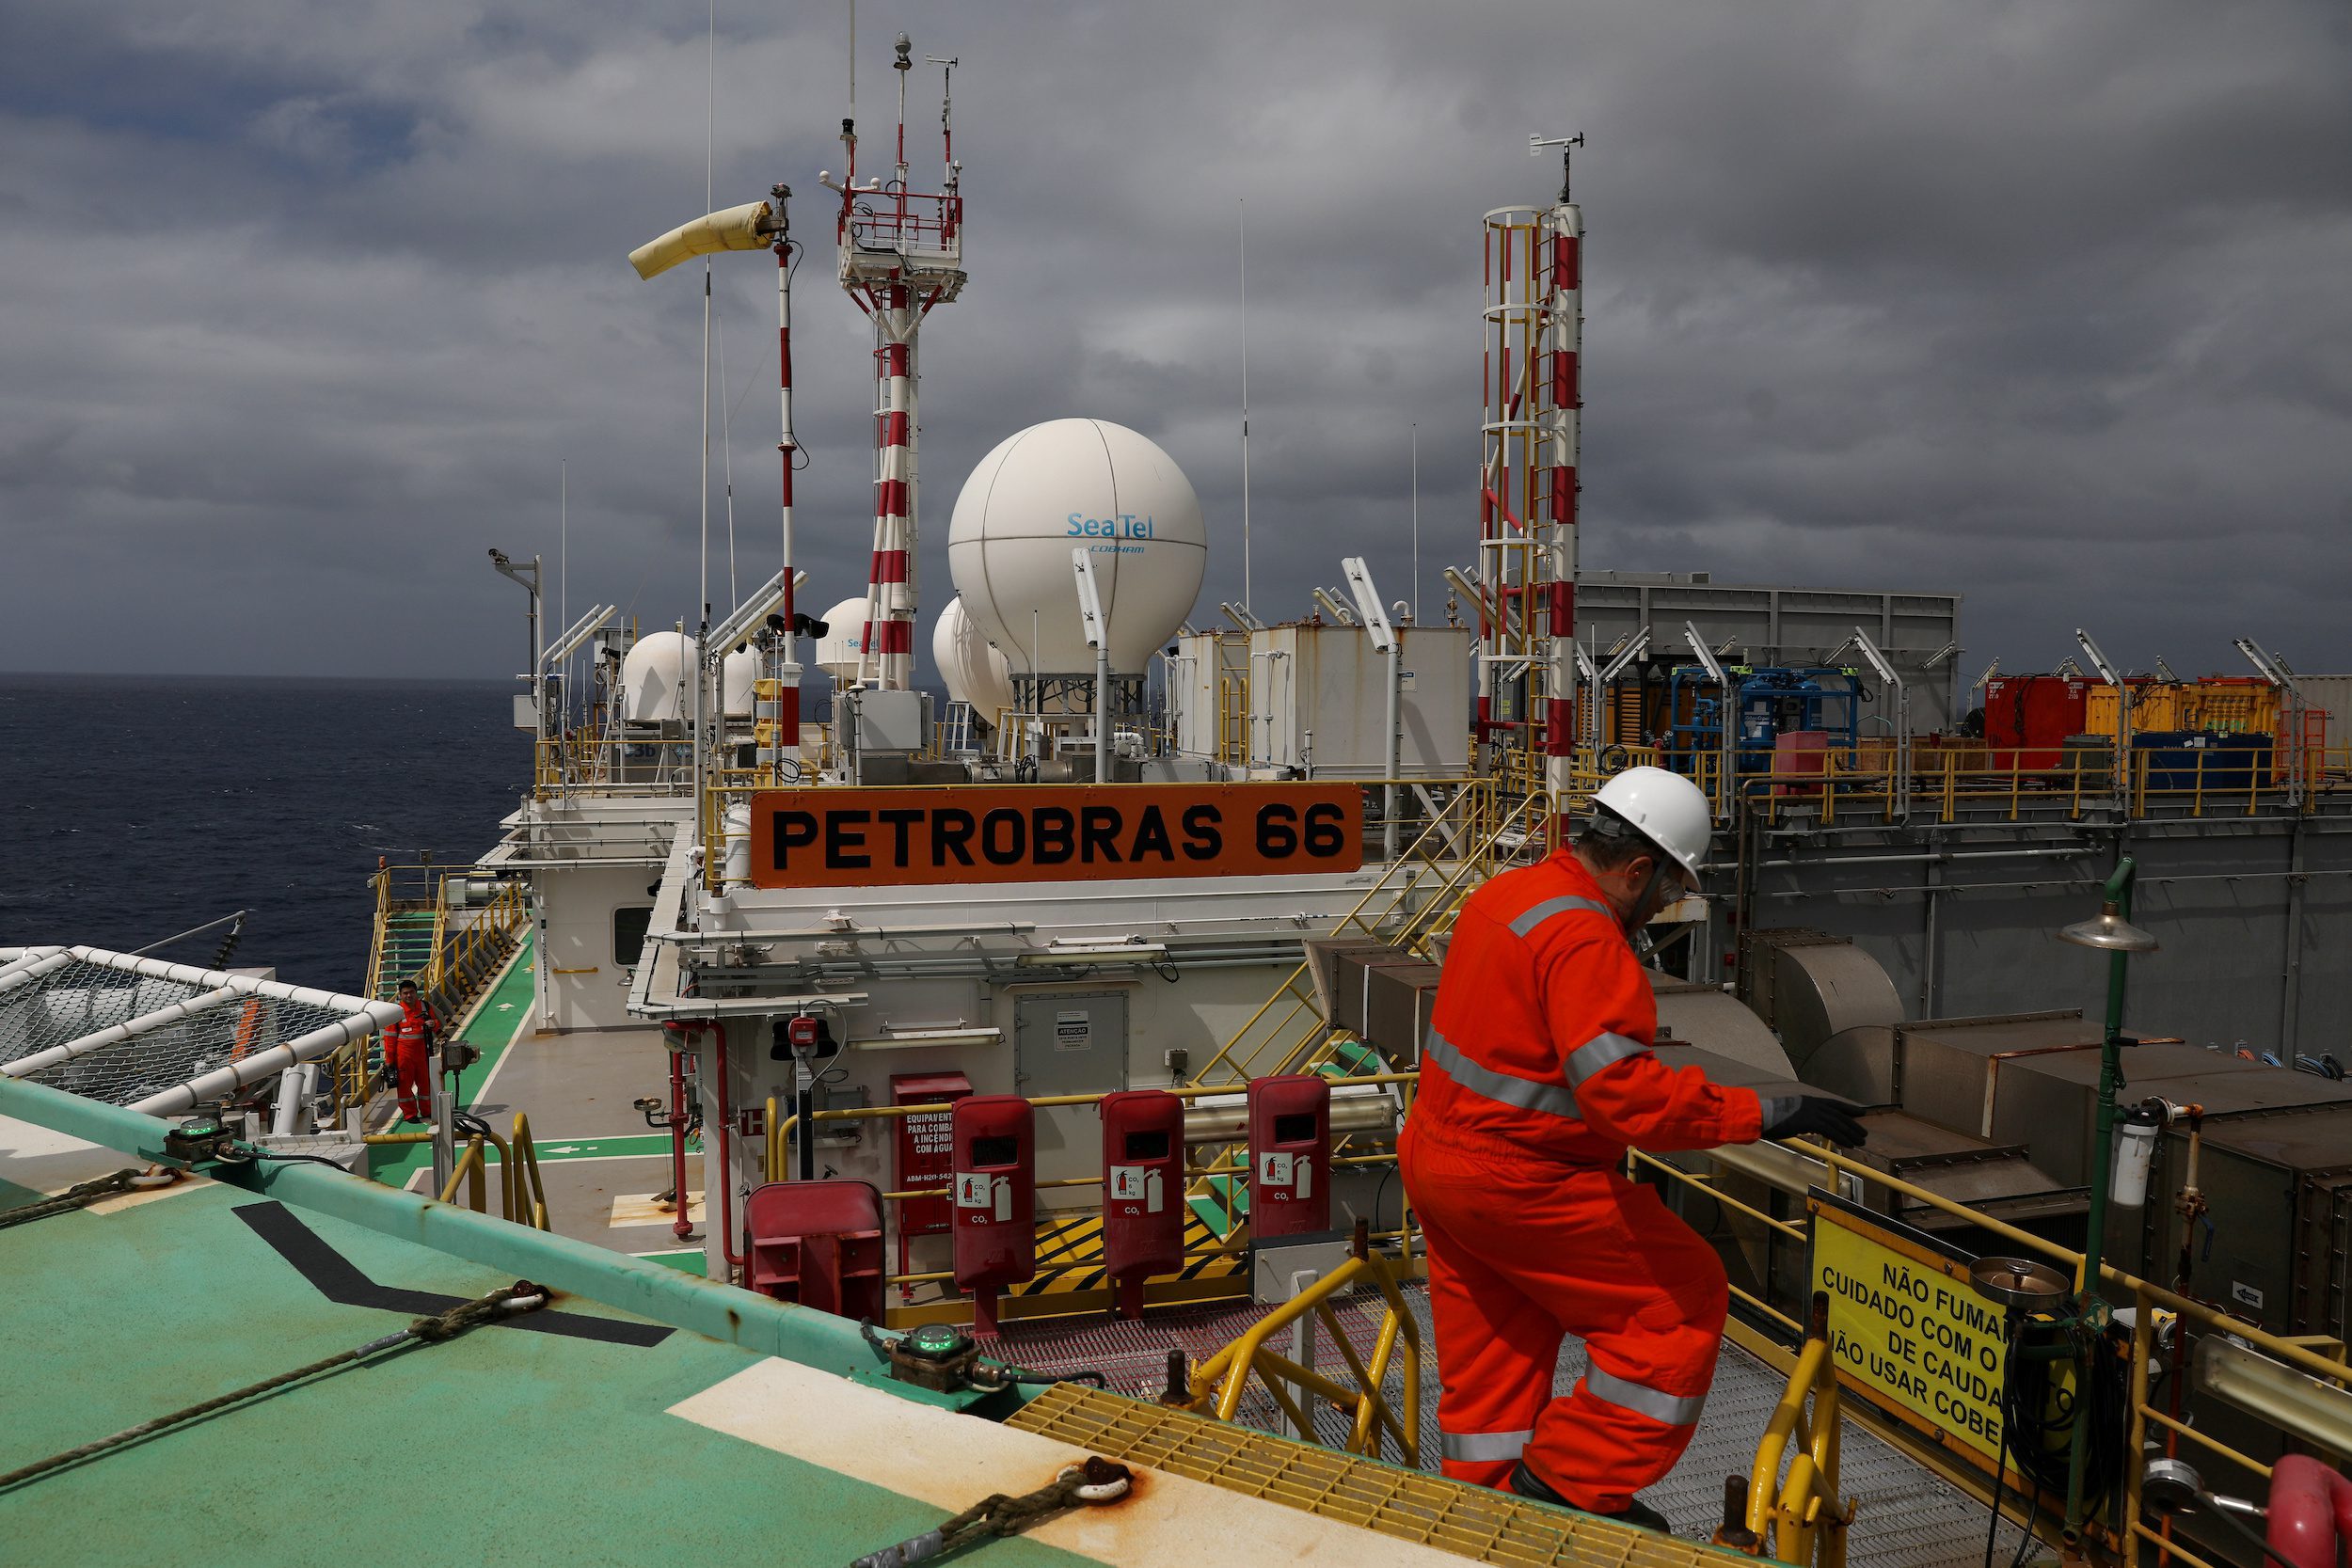 Offshore Brazil Petrobras P-66 oil rig